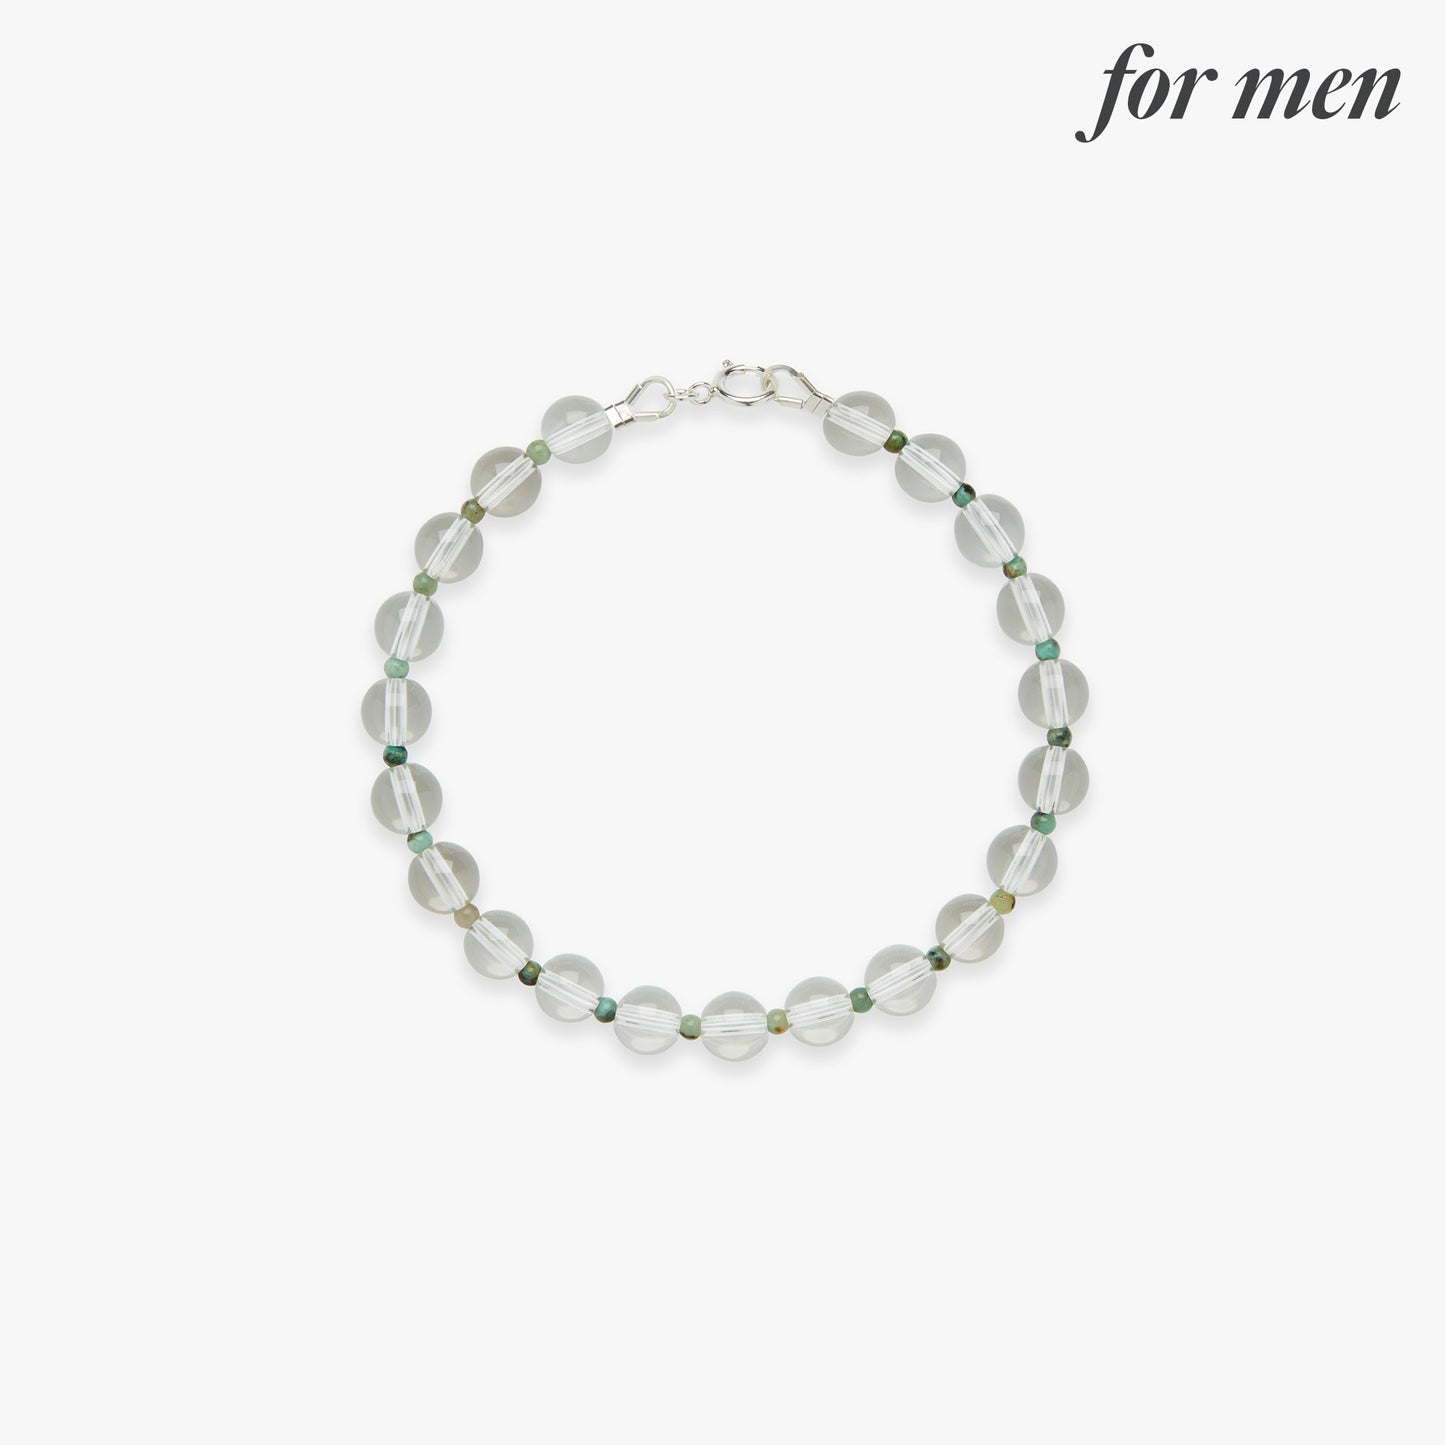 Iced matcha gemstone bracelet silver for men